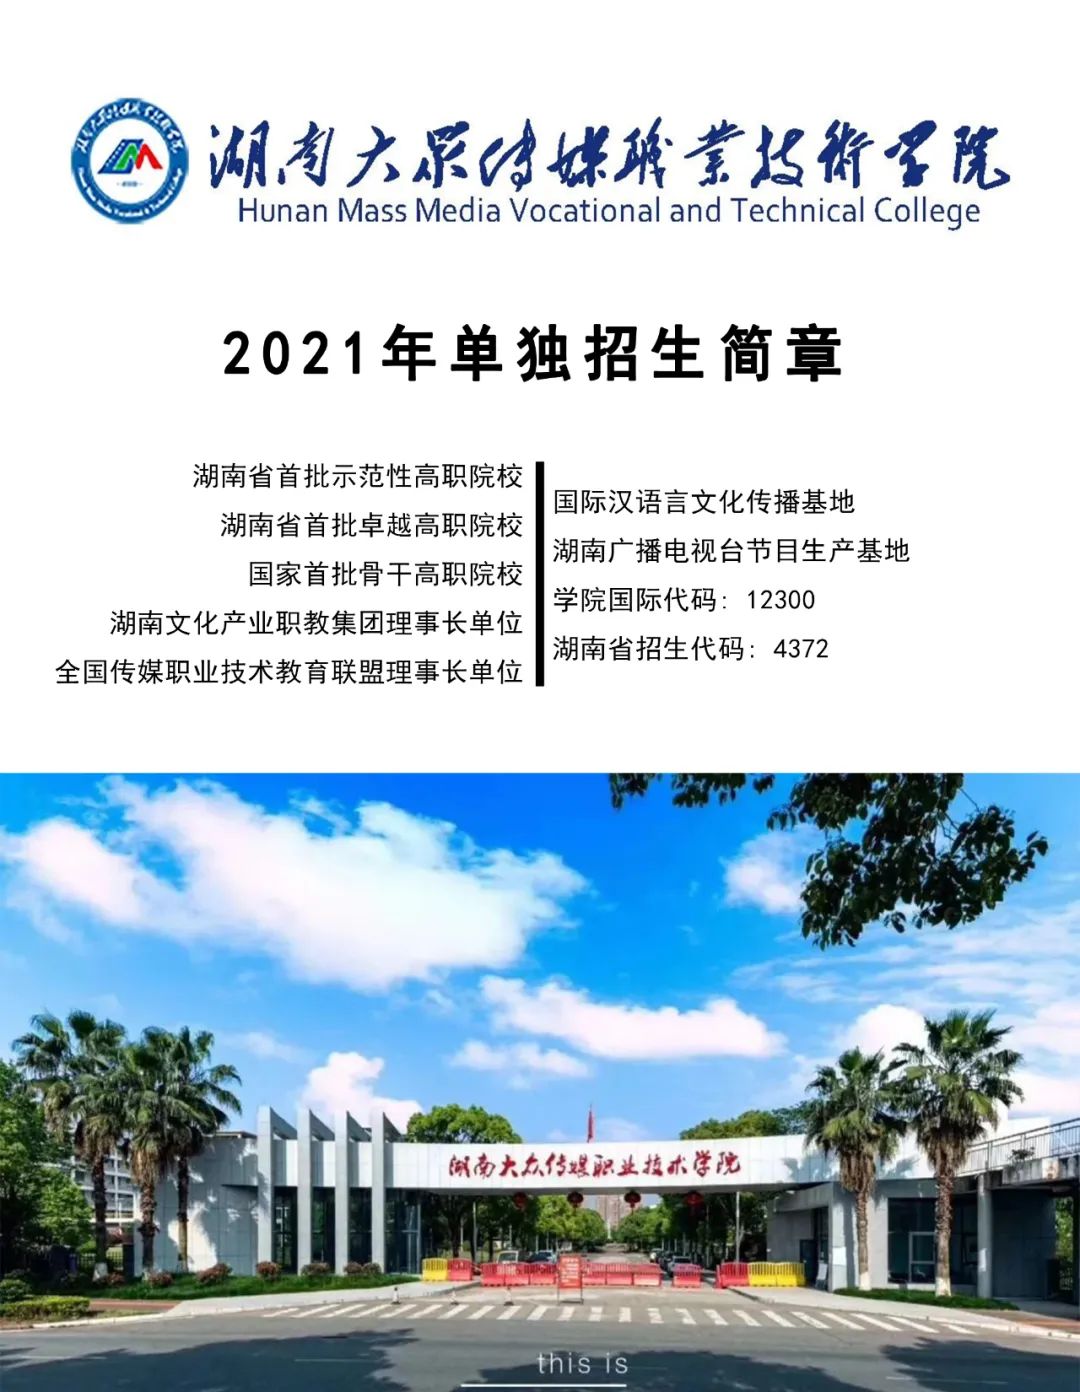 权威发布 | 湖南大众传媒职业技术学院2021年单独招生简章